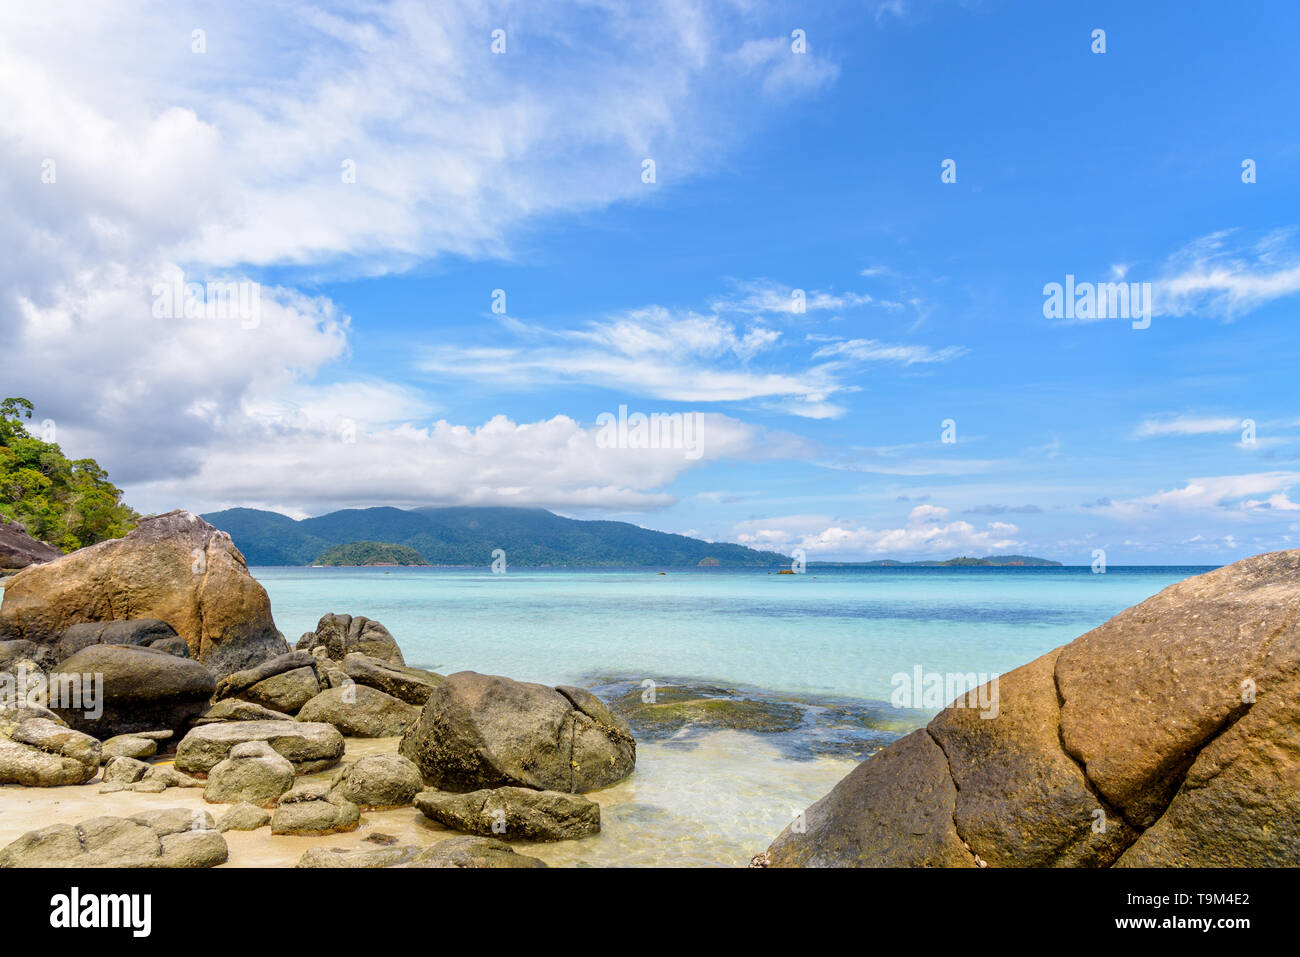 Schönen Tropen Natur Landschaft aus Meer, Strand, Felsen und Wolken am blauen Himmel im Sommer bei Ko Ra Wi, siehe die Ko Adang vor in der Nähe von Koh Lip Stockfoto